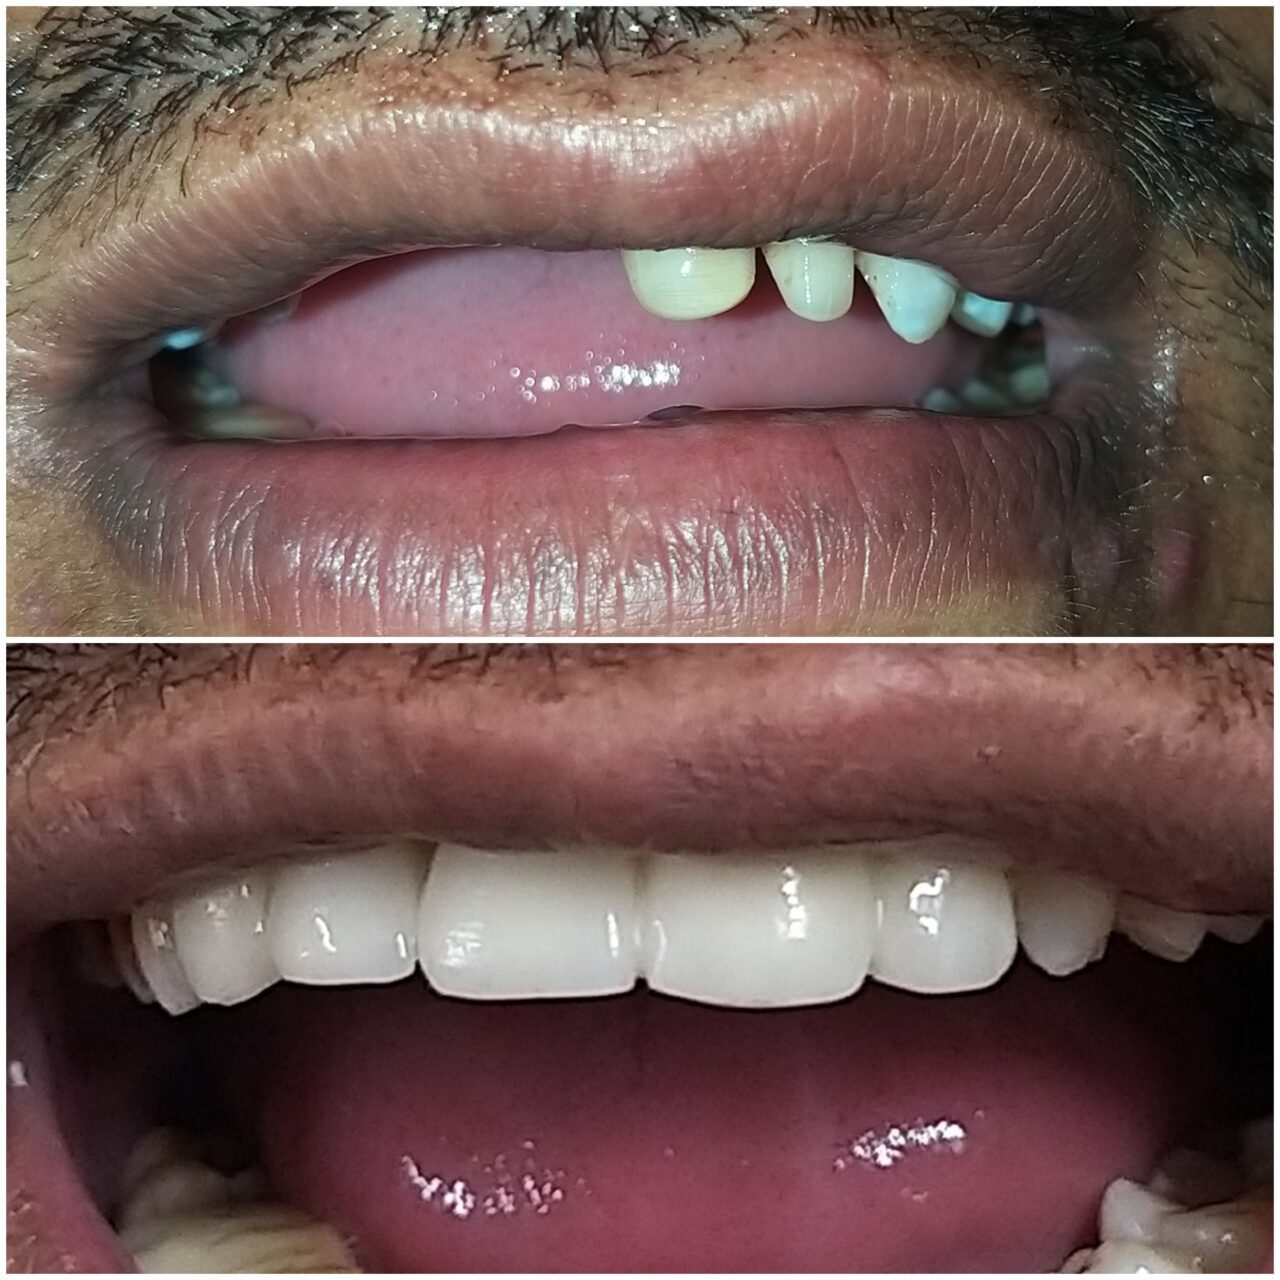 full mouth rehabilitation with ceramic bridge - 1